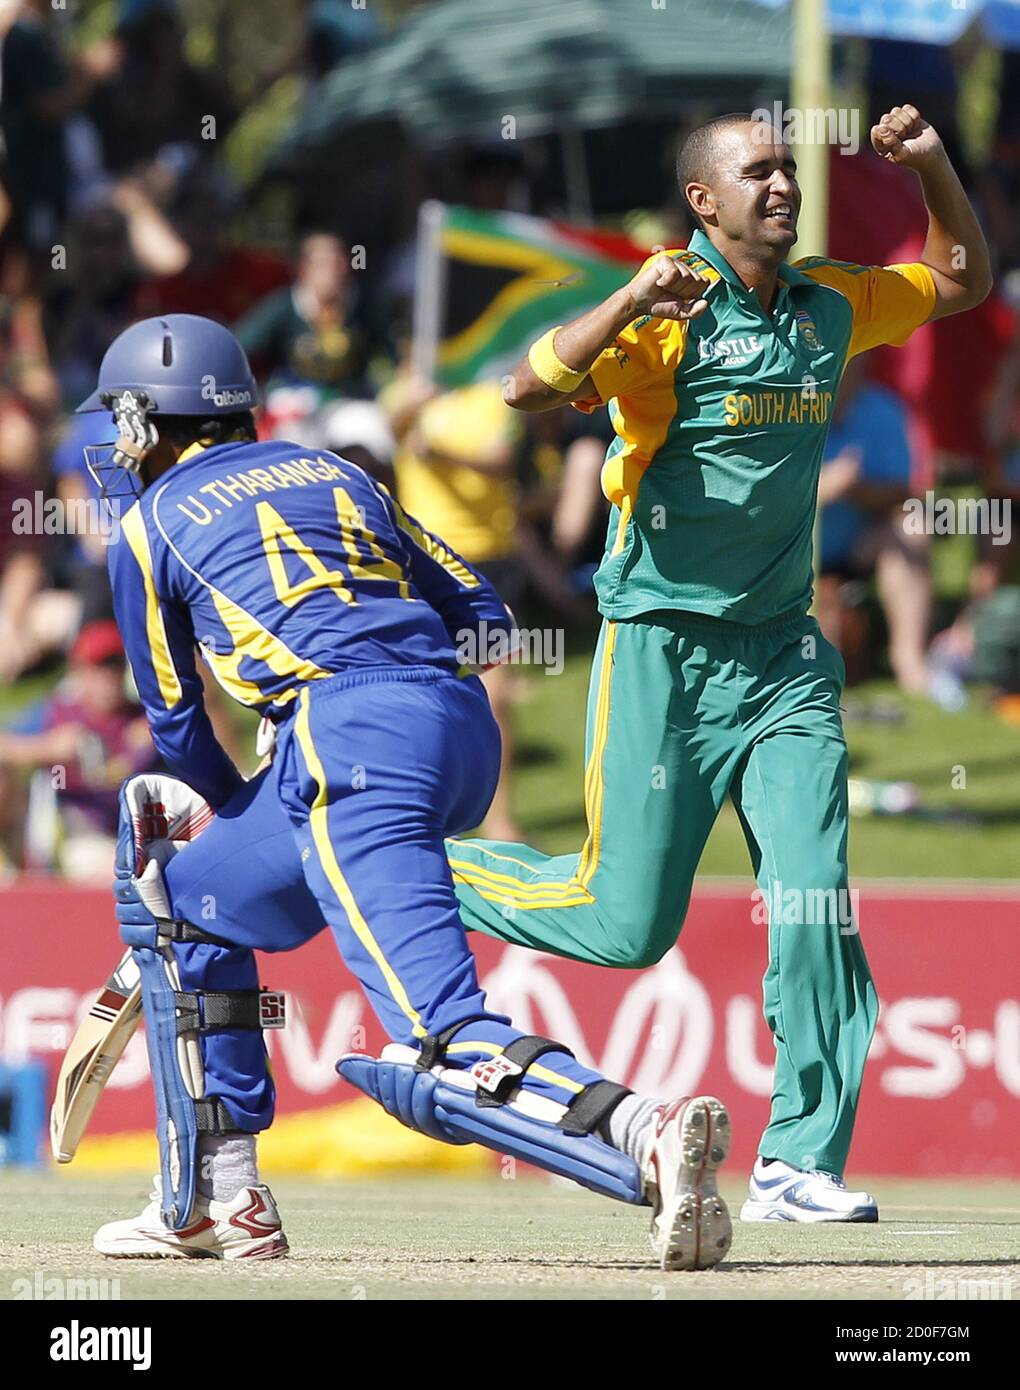 Der Südafrikaner Robin Peterson (R) feiert die Entlassung von Sri Lankas Upul Tharanga (L), der von Colin Ingram beim dritten eintägigen internationalen Cricket-Spiel in Bloemfontein am 17. Januar 2012 erwischt wurde. REUTERS/Siphiwe Sibeko (SÜDAFRIKA - Tags: SPORT CRICKET) Stockfoto